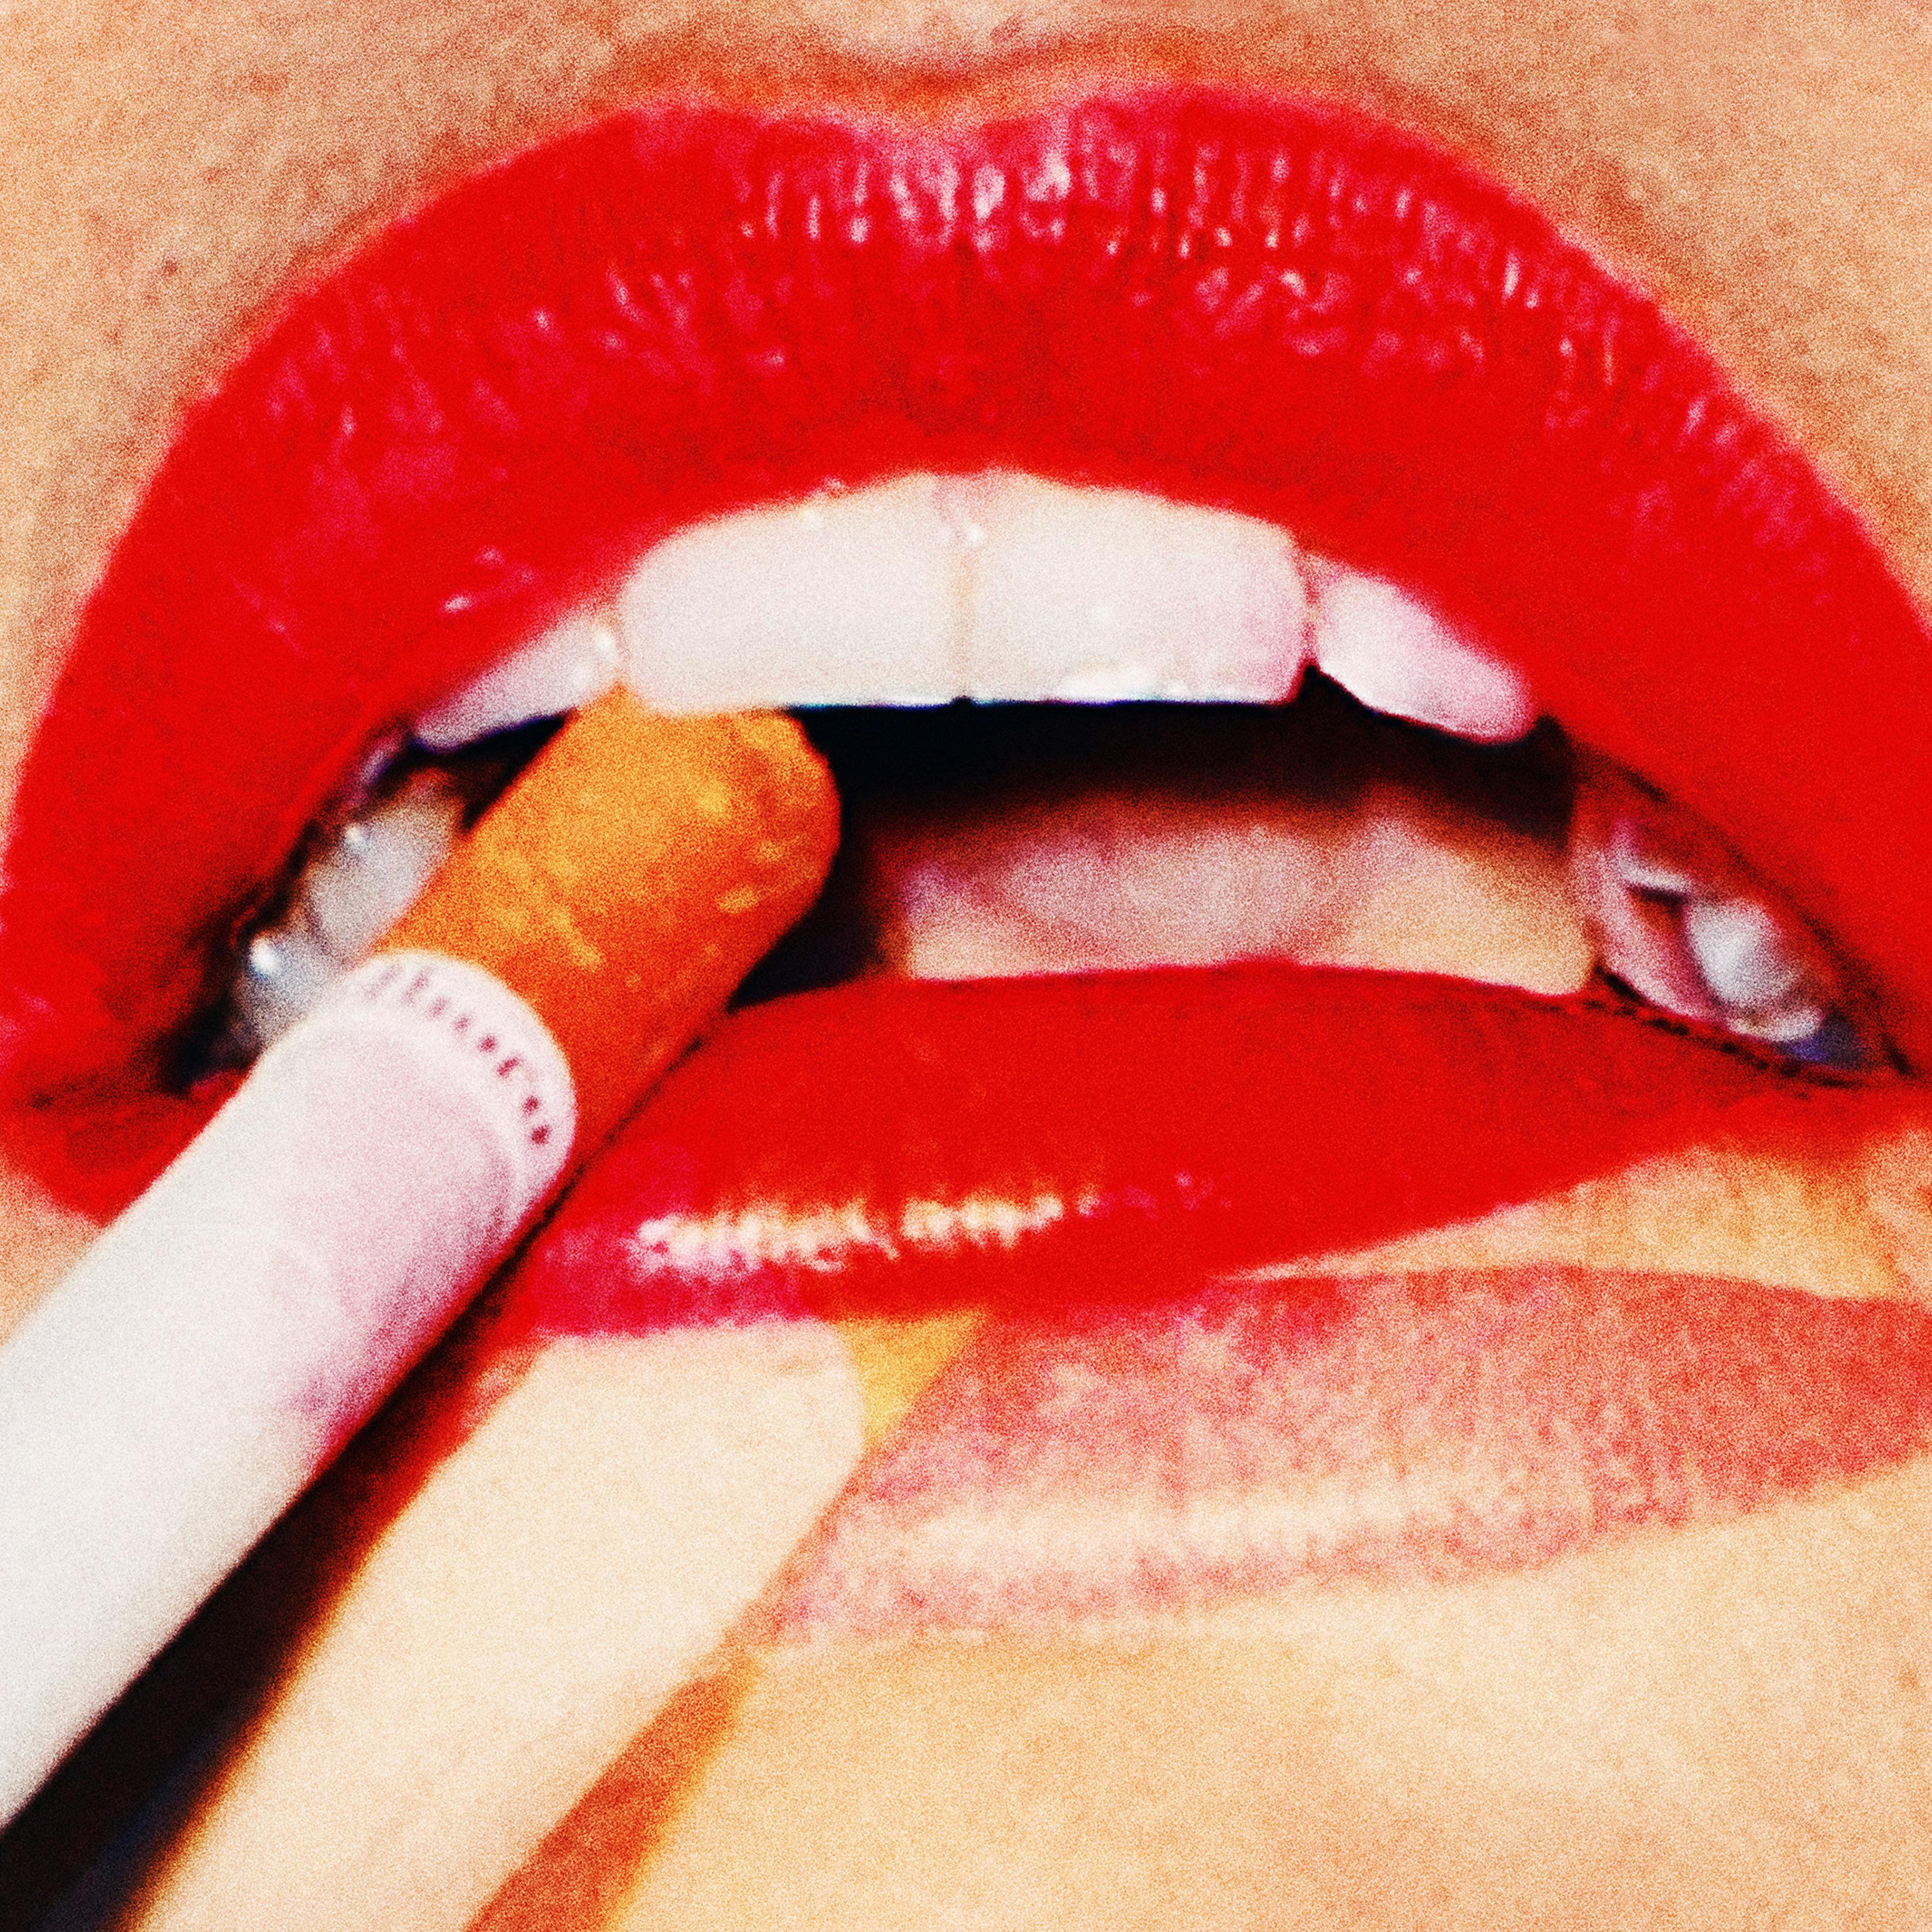 "The Lips" photographie 24" x 24"  Edition de 15 exemplaires par Larsen Sotelo